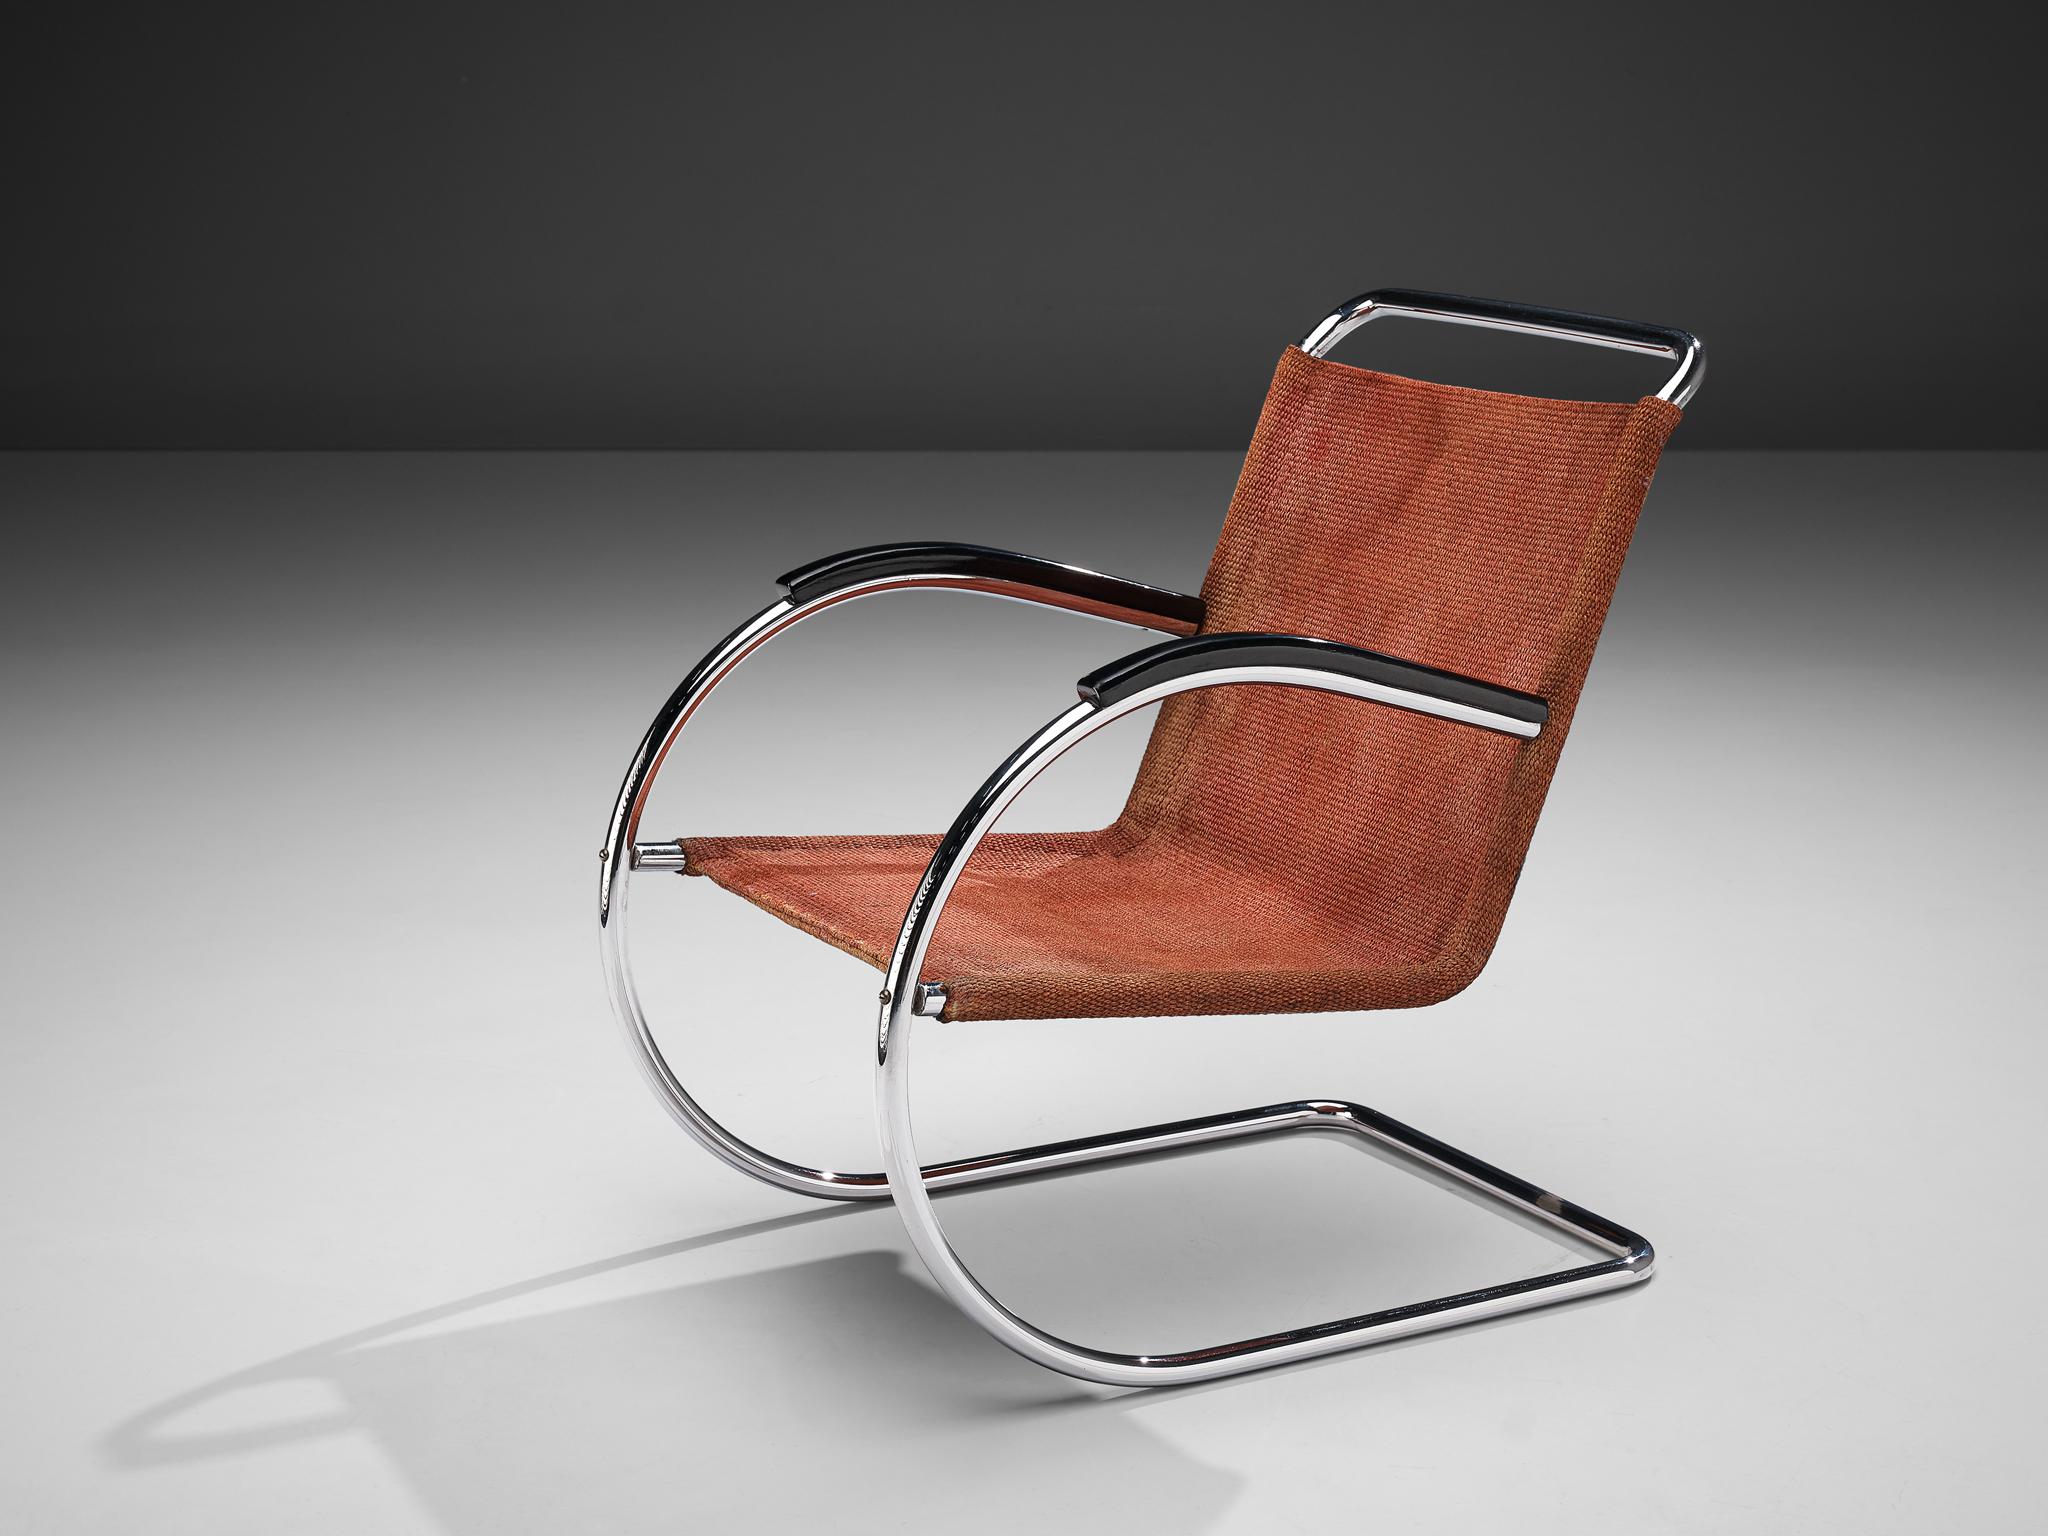 Bas van Pelt pour EMS, fauteuil, métal, sisal, bois, Pays-Bas, années 1930.

Cette chaise confortable et originale a été conçue par le designer d'intérieur et de mobilier néerlandais Bas van Pelt (1900-1945) et a été fabriquée par E.M.S. Overschie.